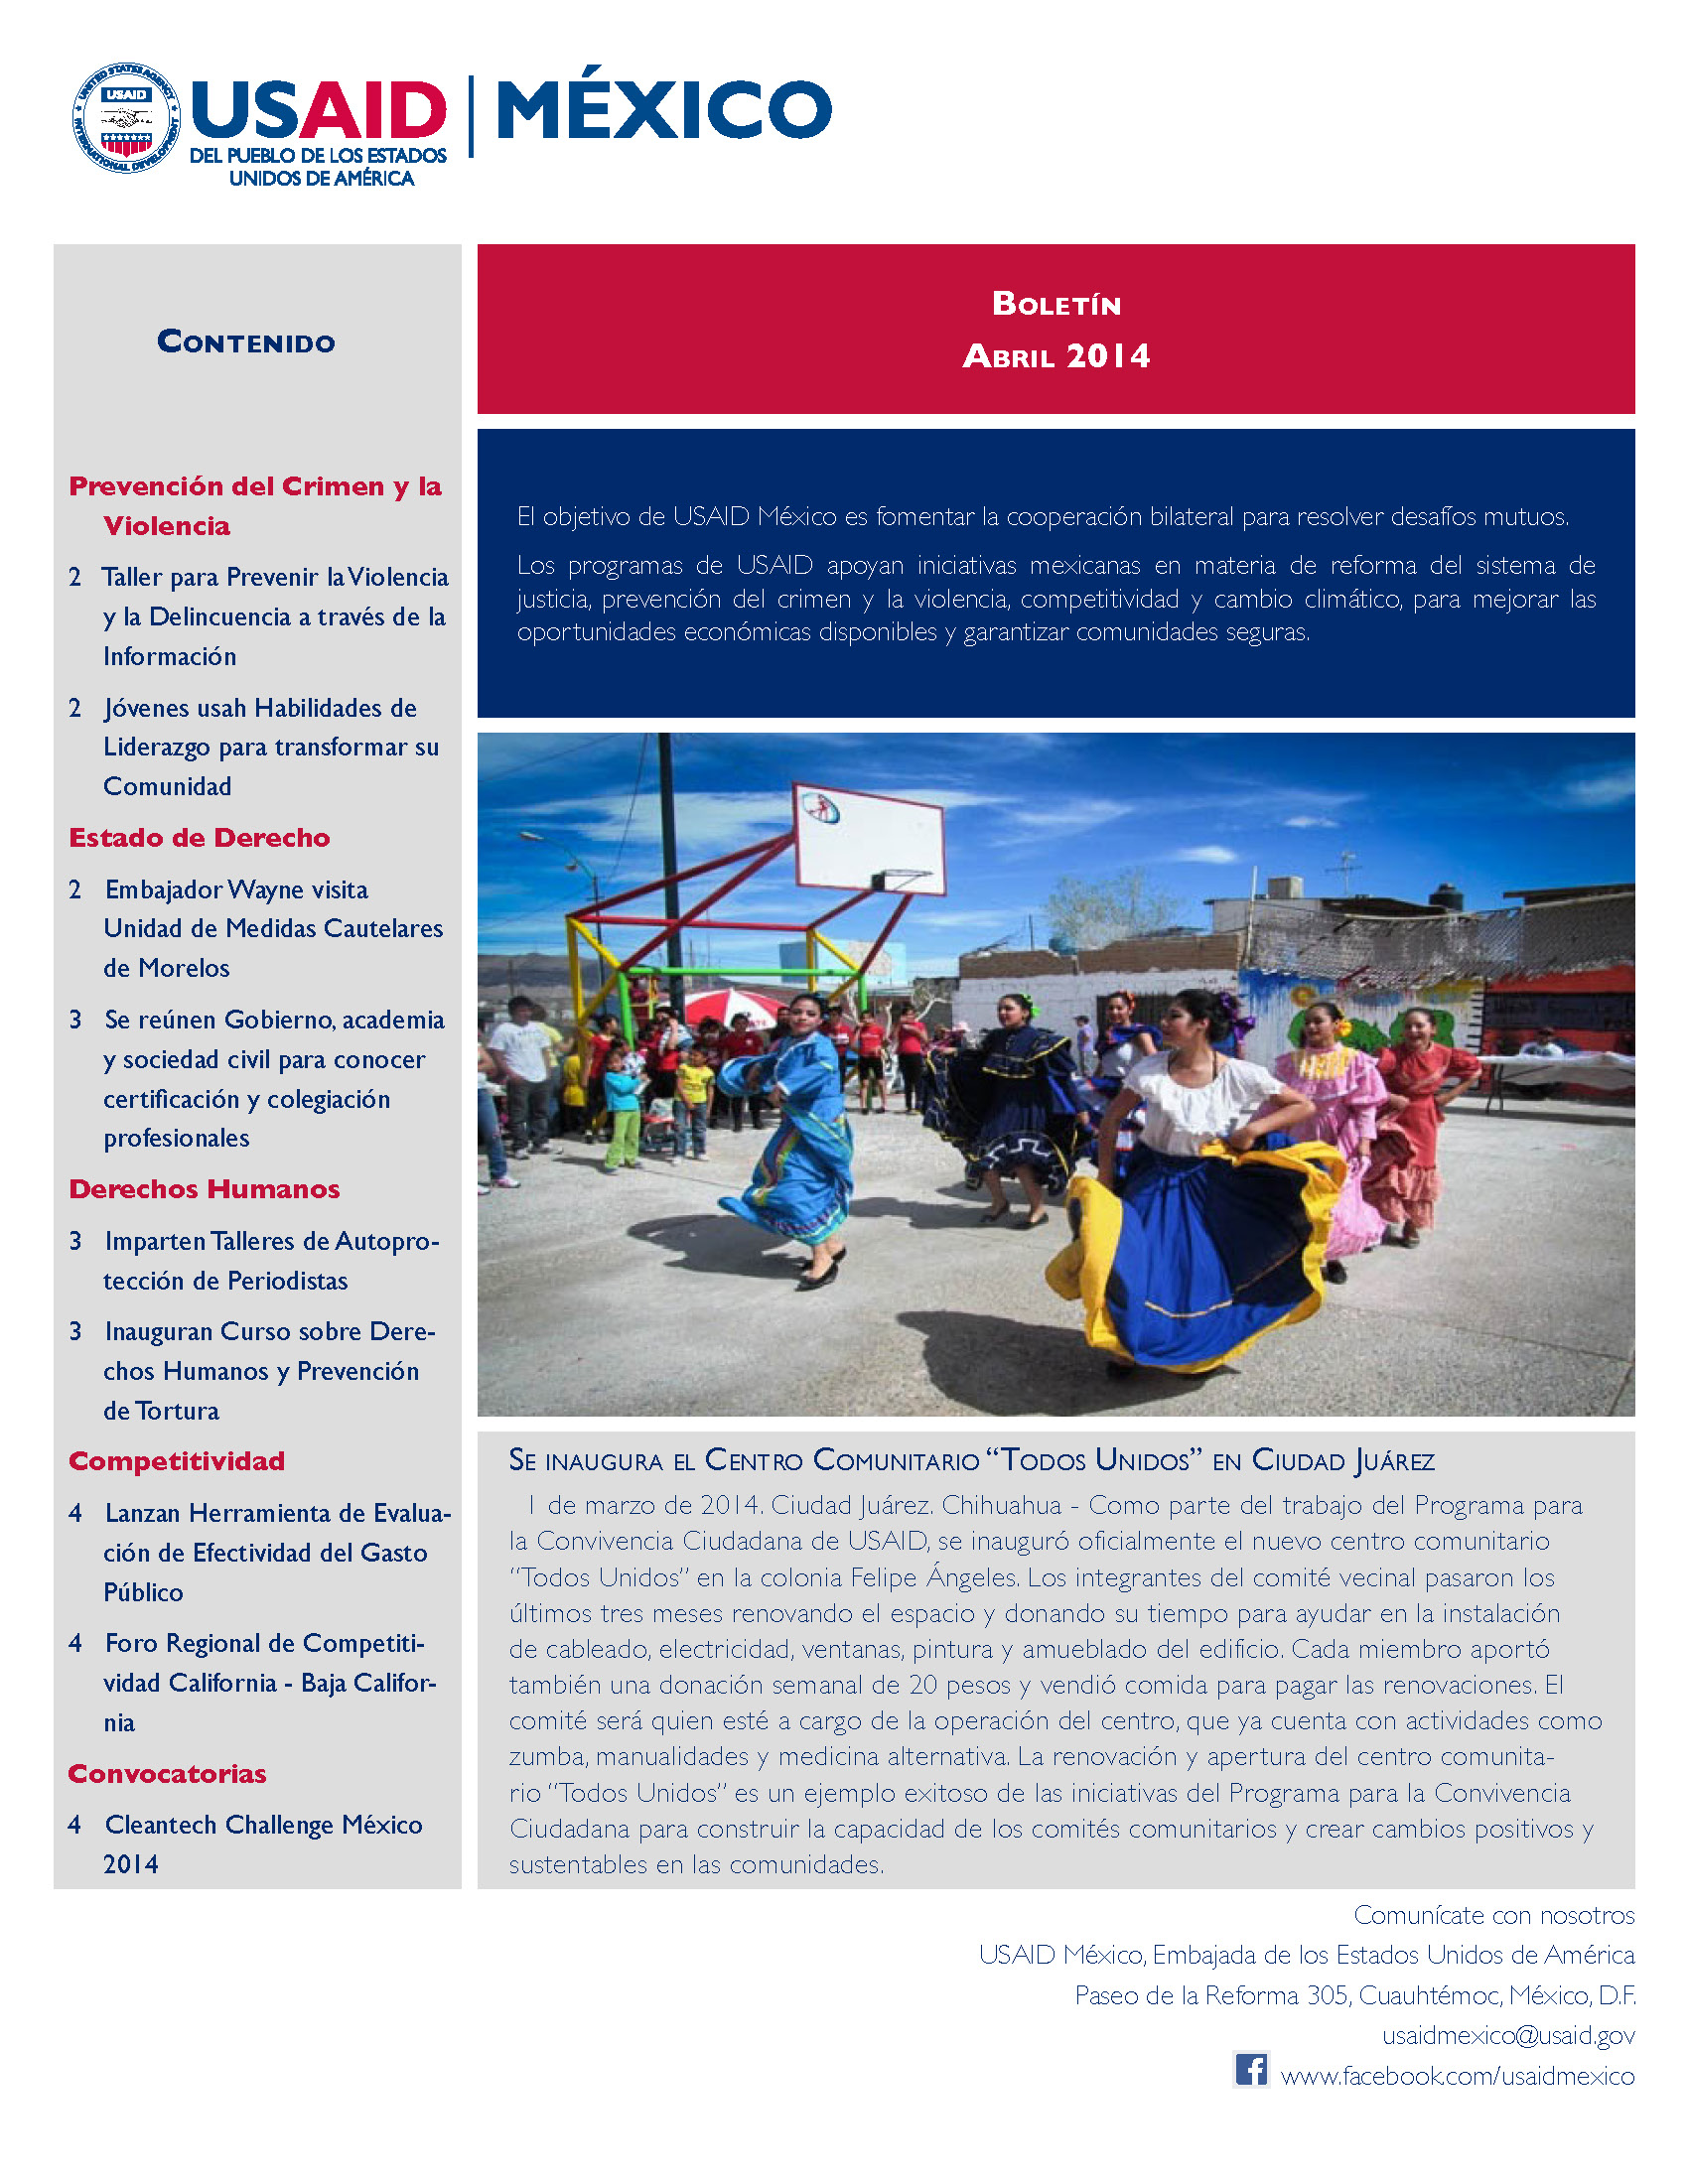 Resumen de actividades de USAID México.